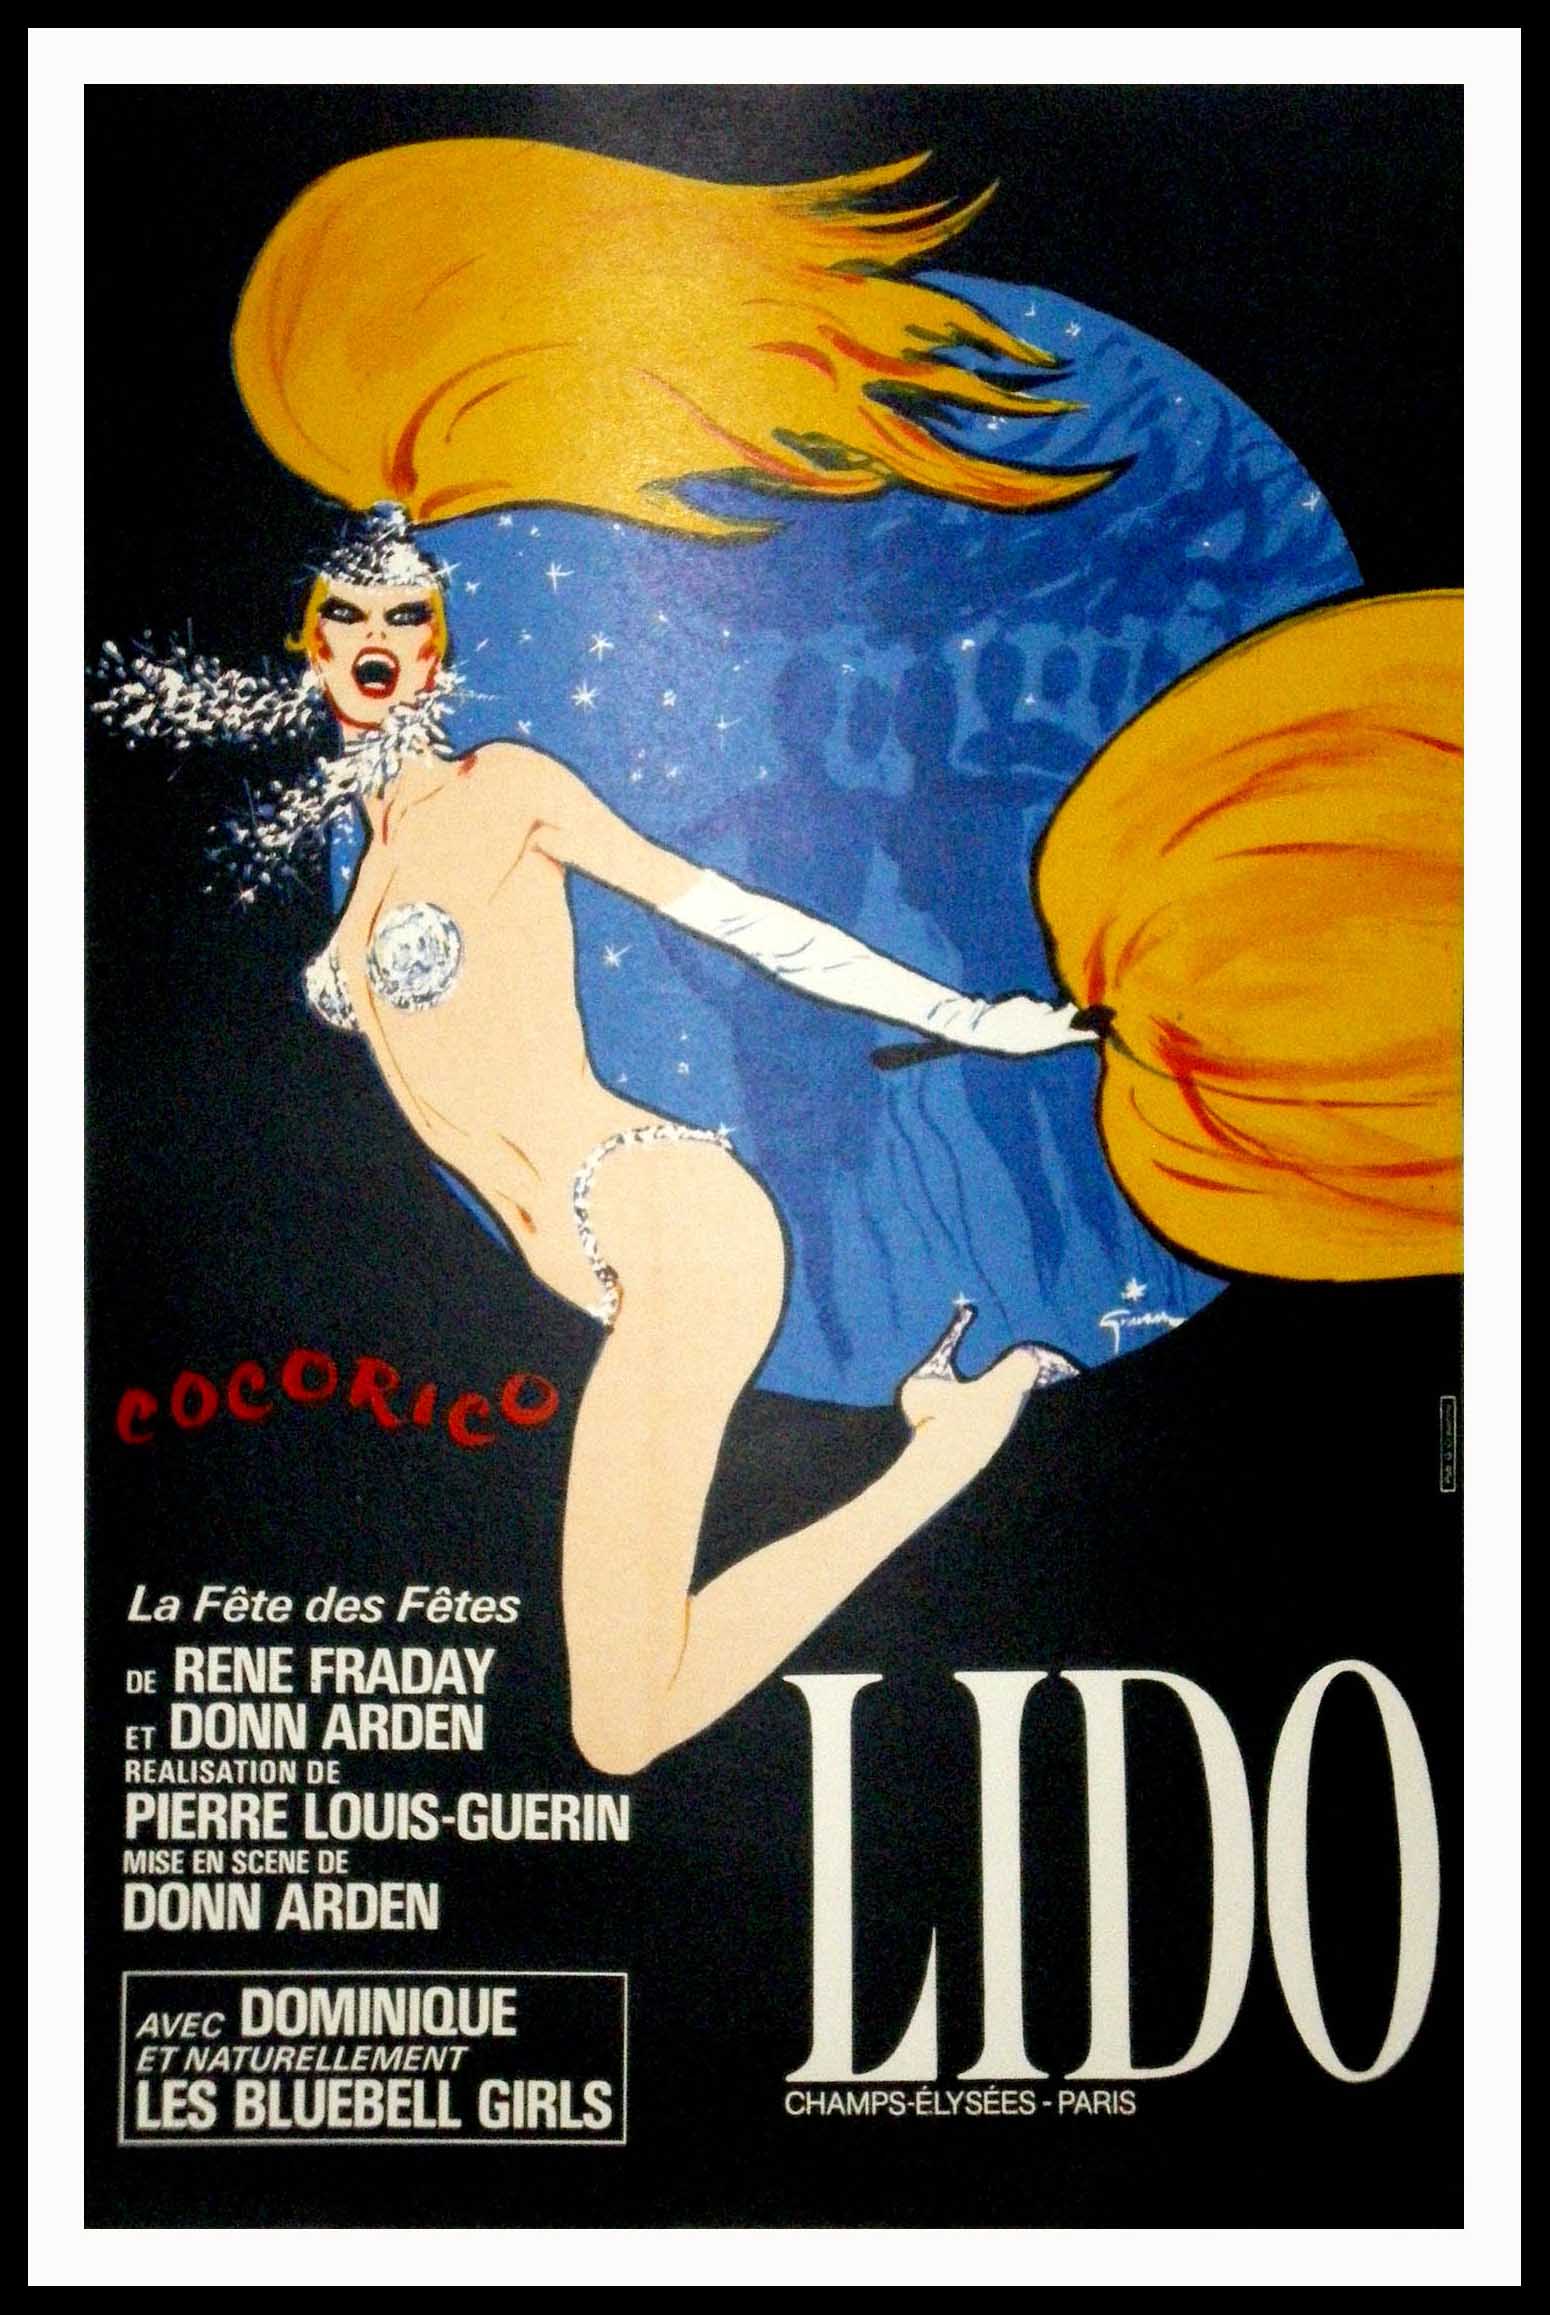 Vintage Poster Ad - Lido Cabaret - Champs-Élysées Paris, France - Bonjour  la Nuit! René Gruau (Hello Night!) | Tote Bag